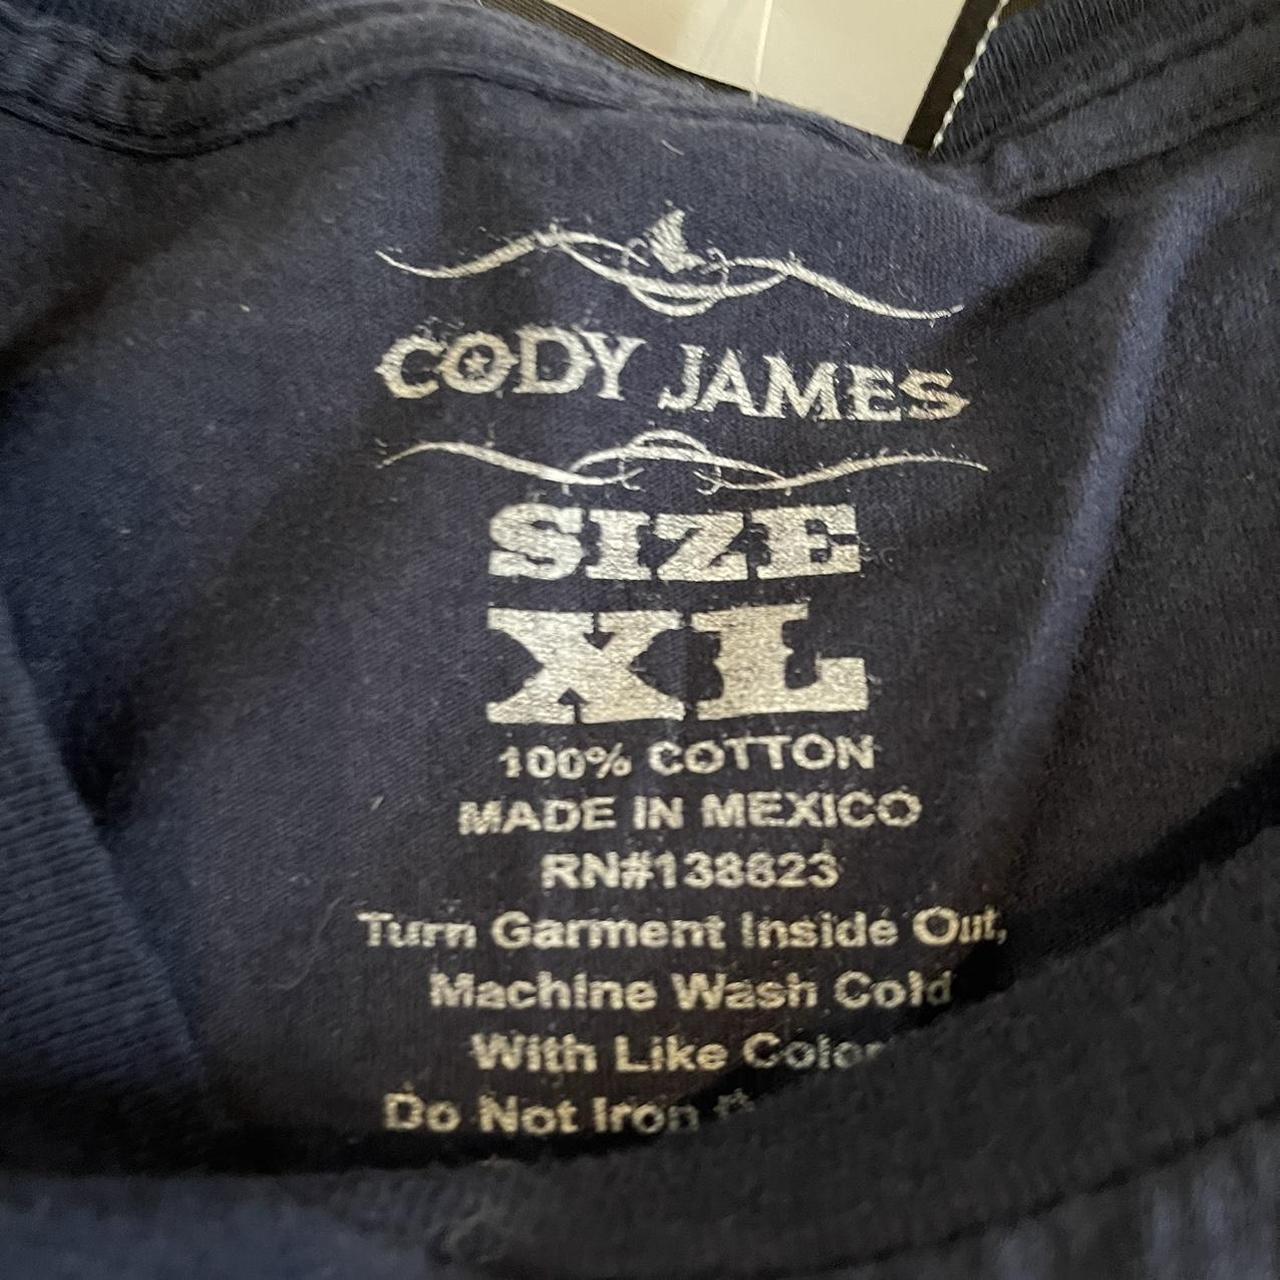 Cody James Men's Navy and White T-shirt (3)